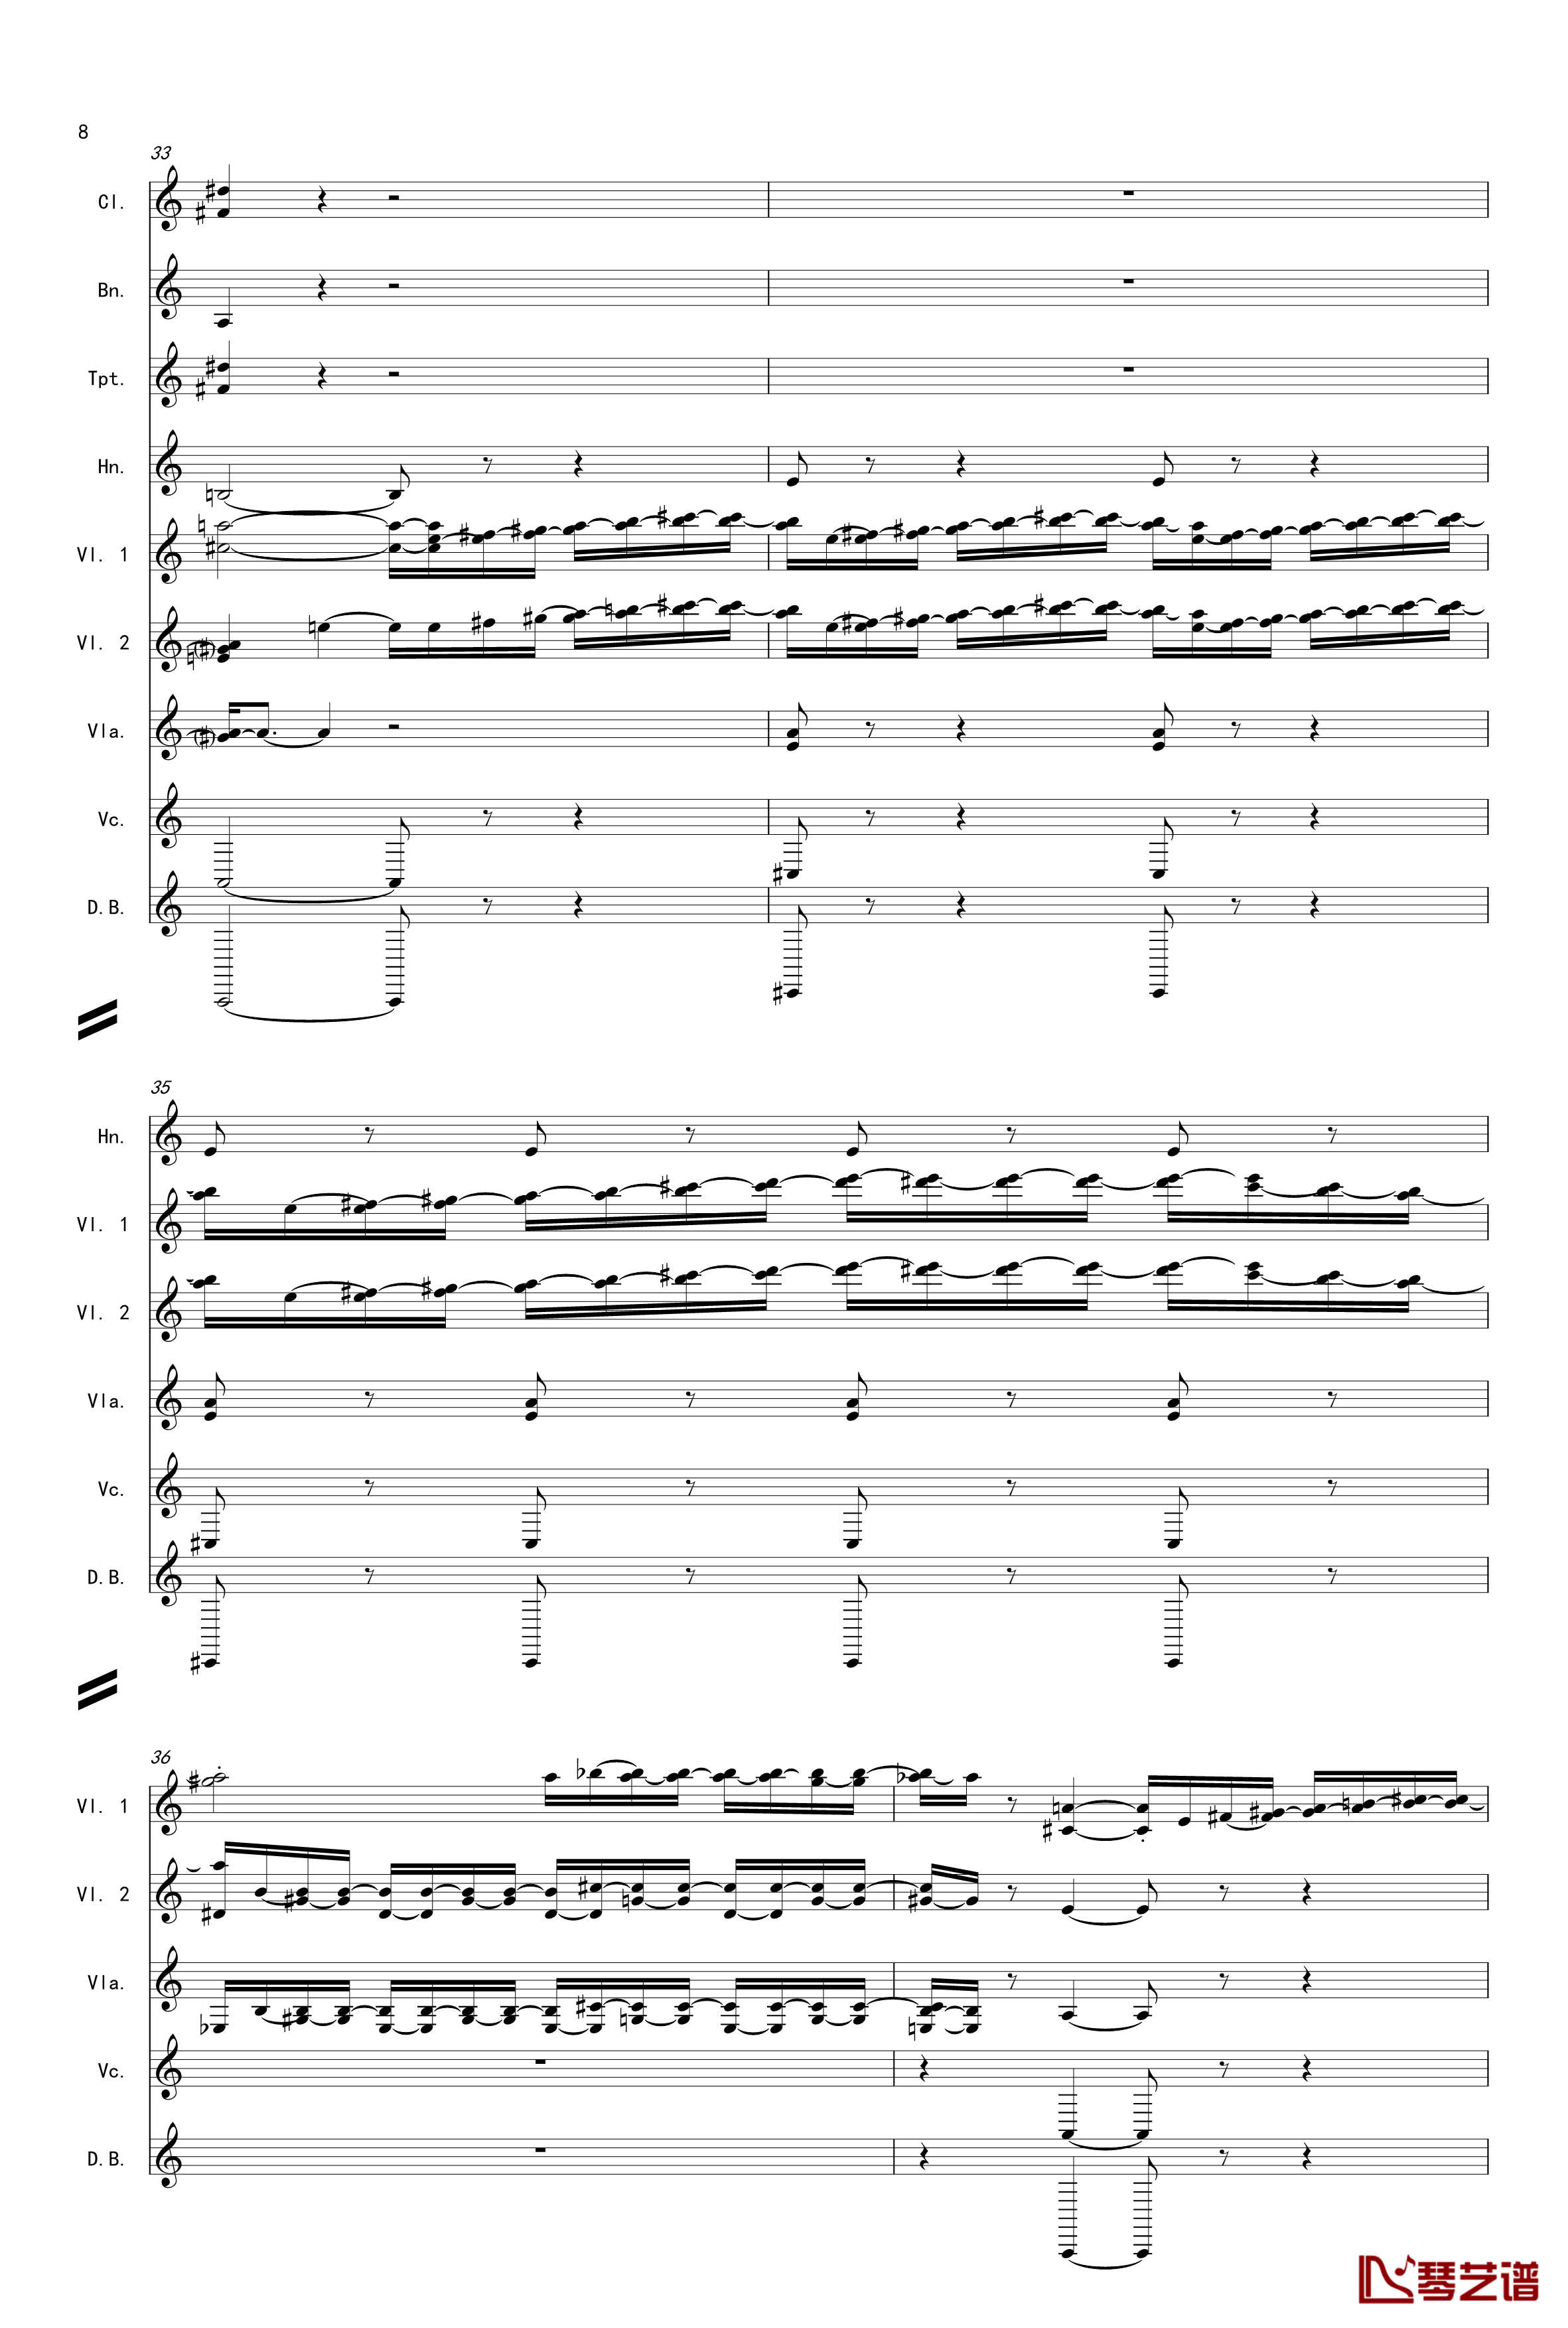 奏鸣曲之交响第14首Ⅲ钢琴谱-贝多芬-beethoven8